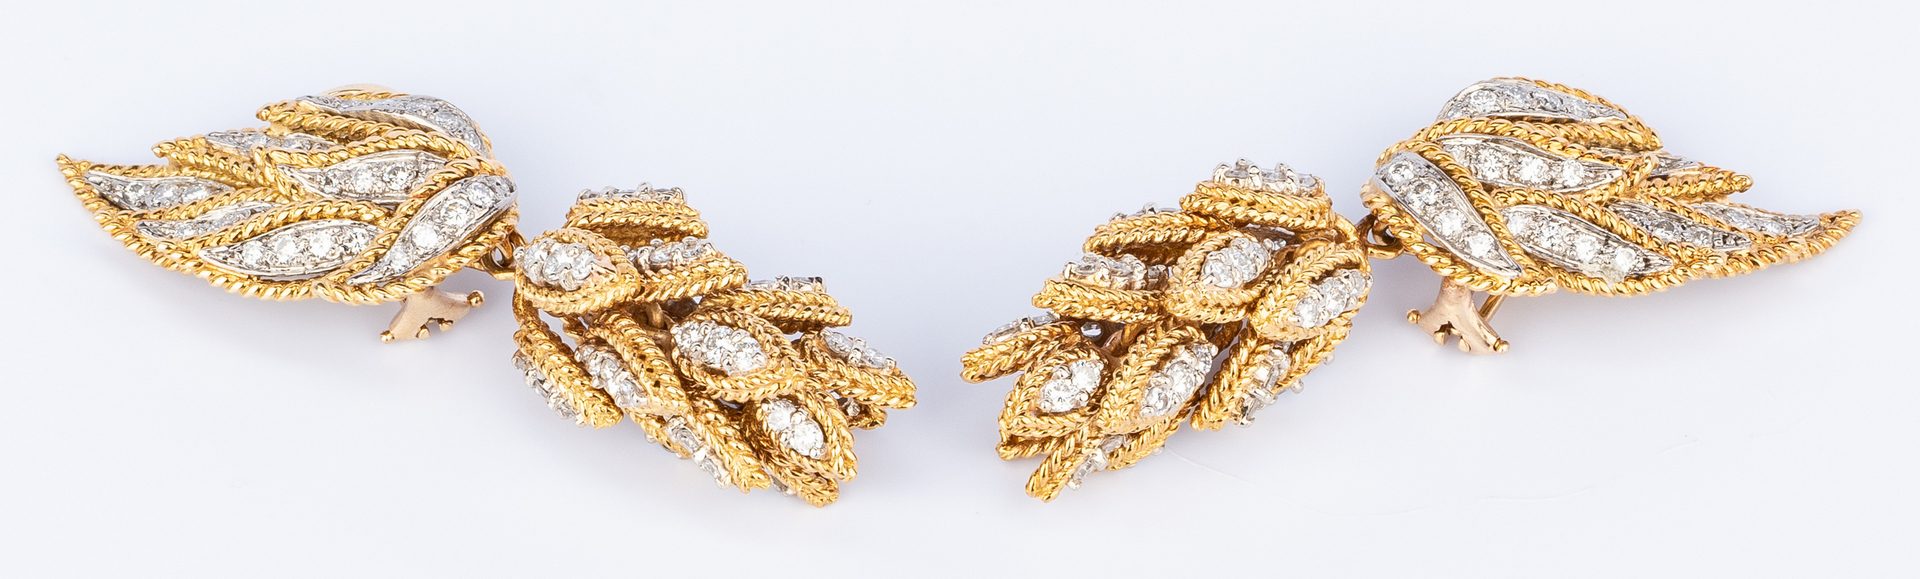 Lot 179: 18K Diamond Petal Earrings in 2 parts